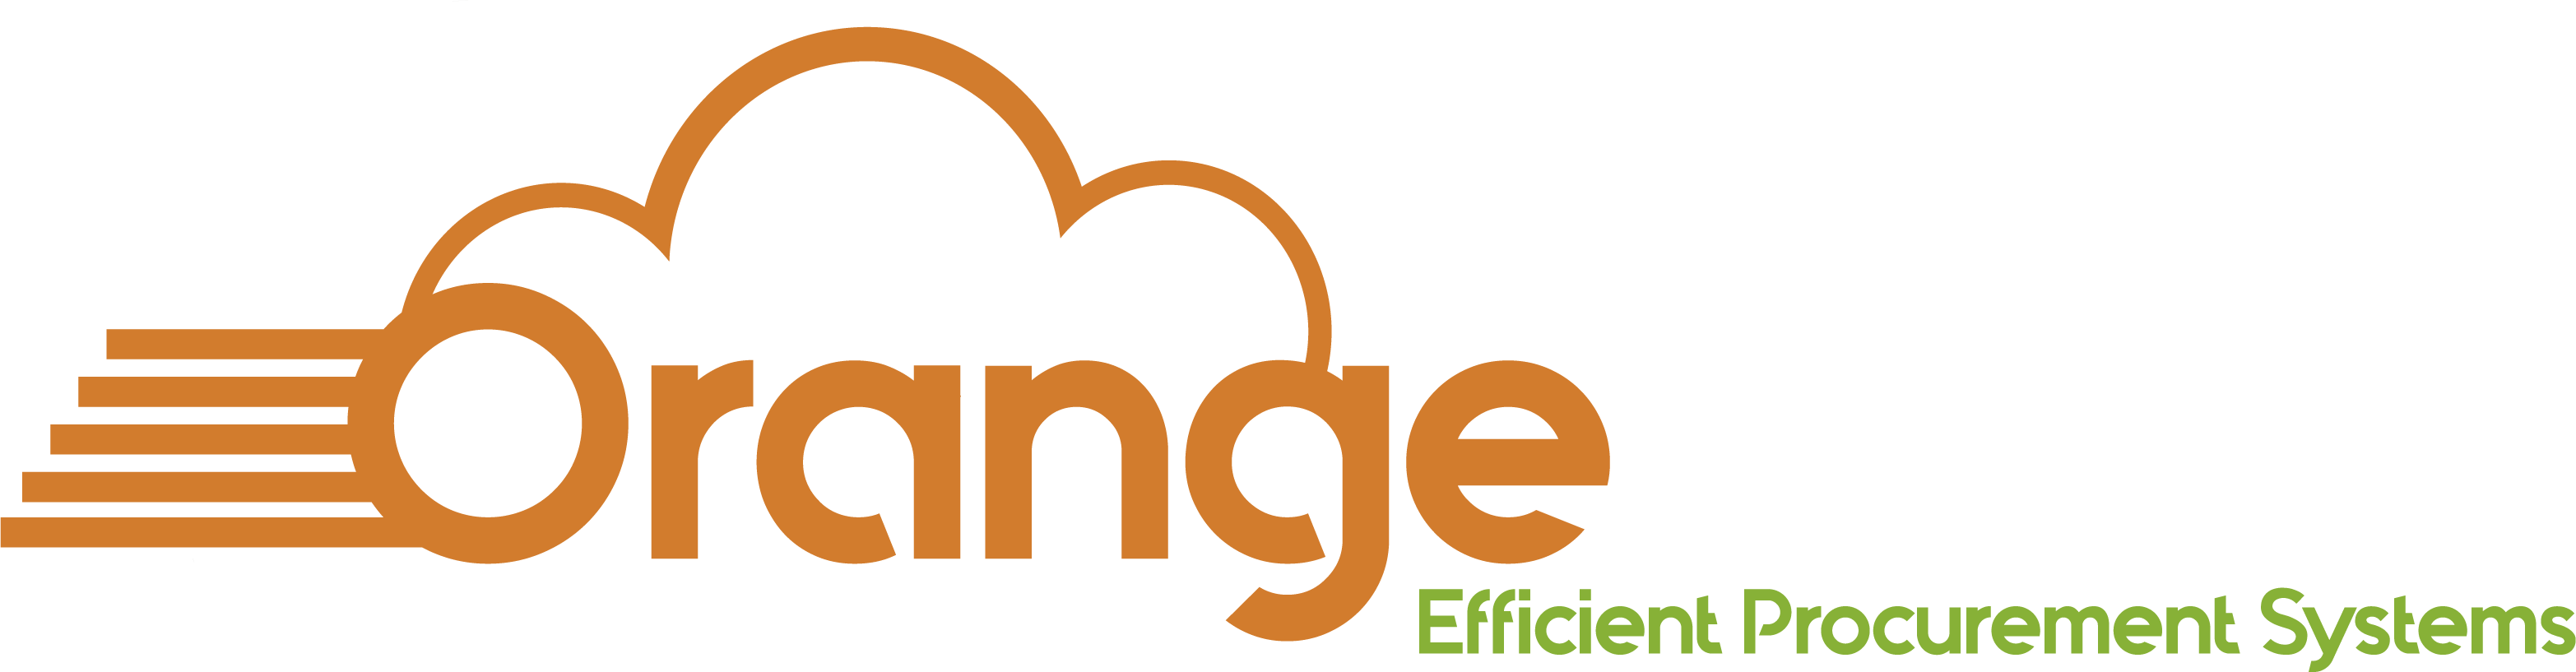 Orange Cloud - Graphic Design (3131x817)